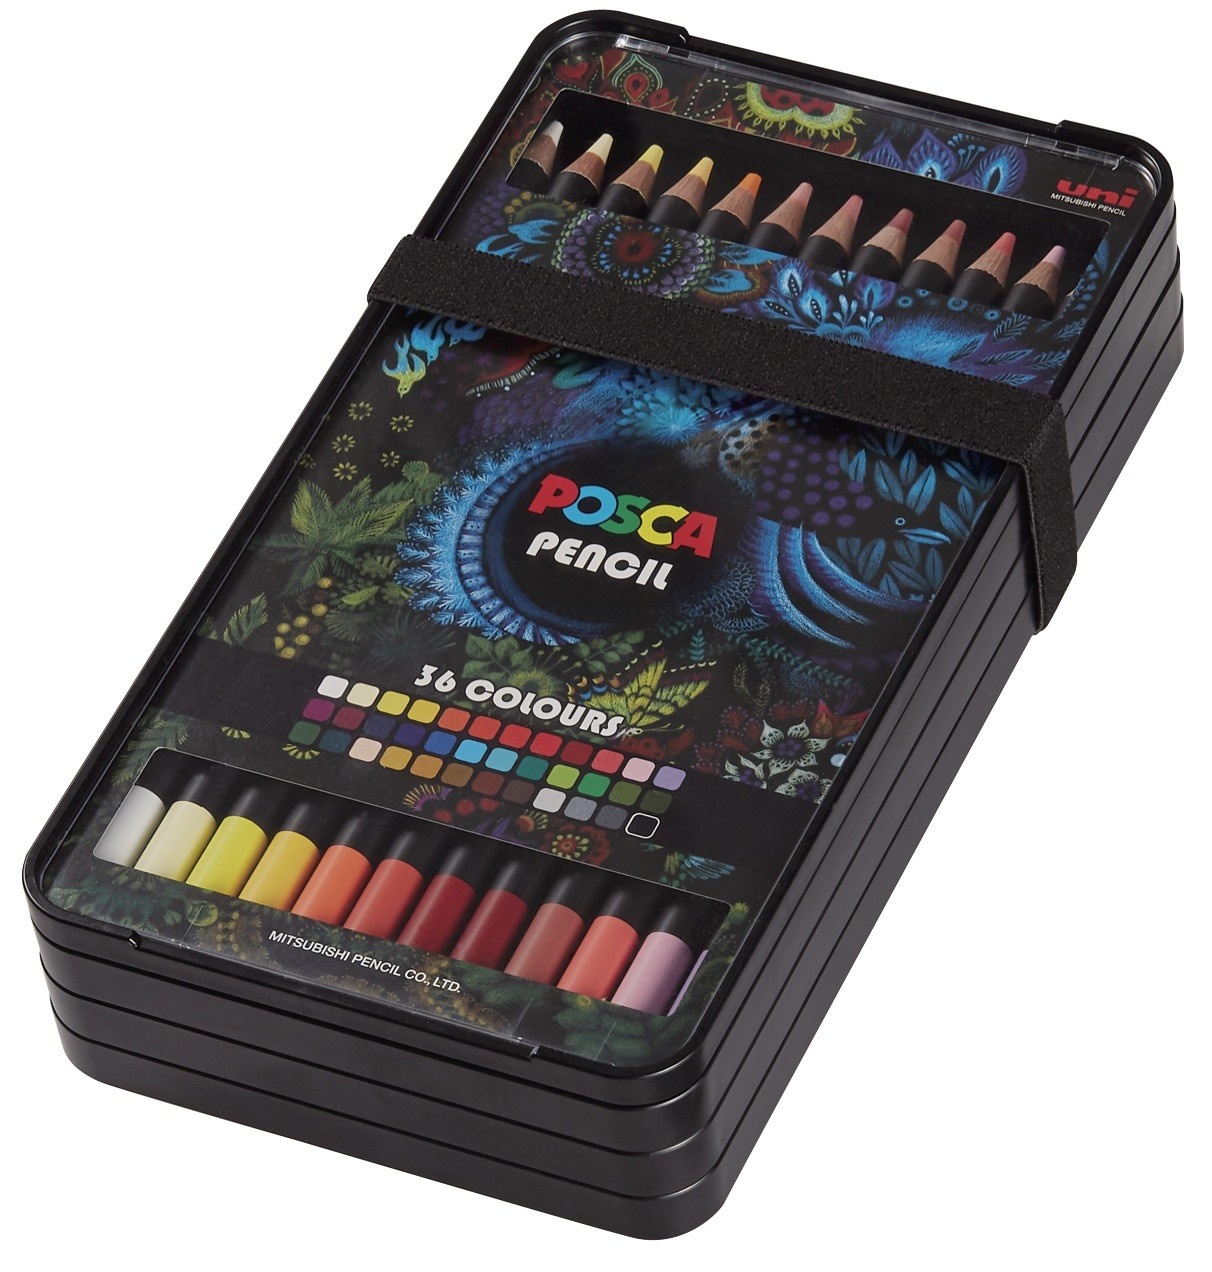 POSCA Set de 12 crayons de couleur POSCA PENCIL Couleurs assorties - Tout  Le Scolaire